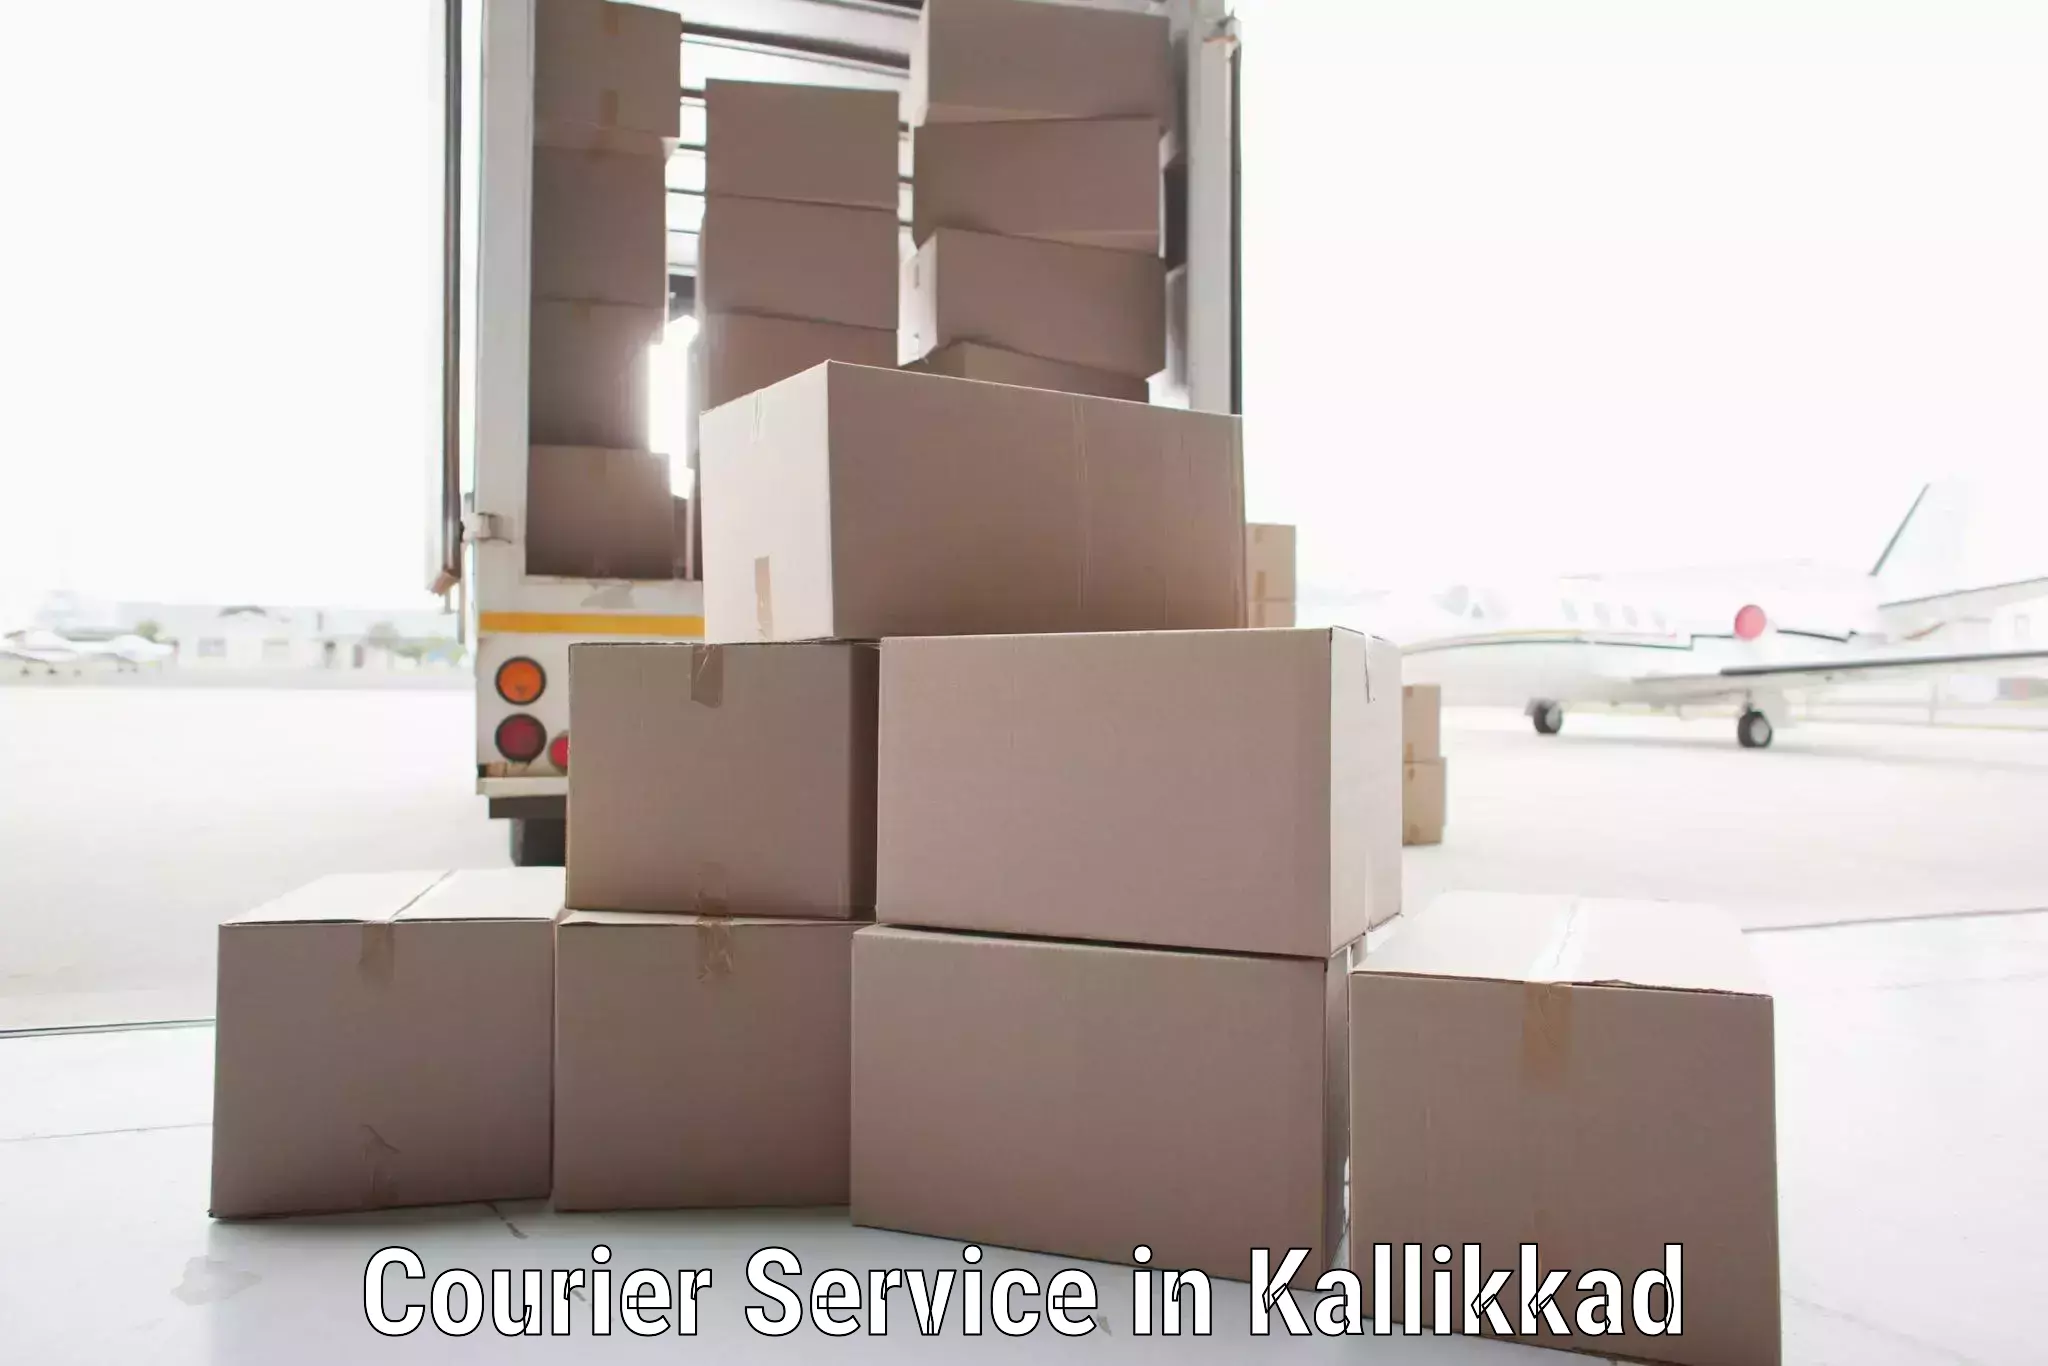 Door-to-door shipment in Kallikkad